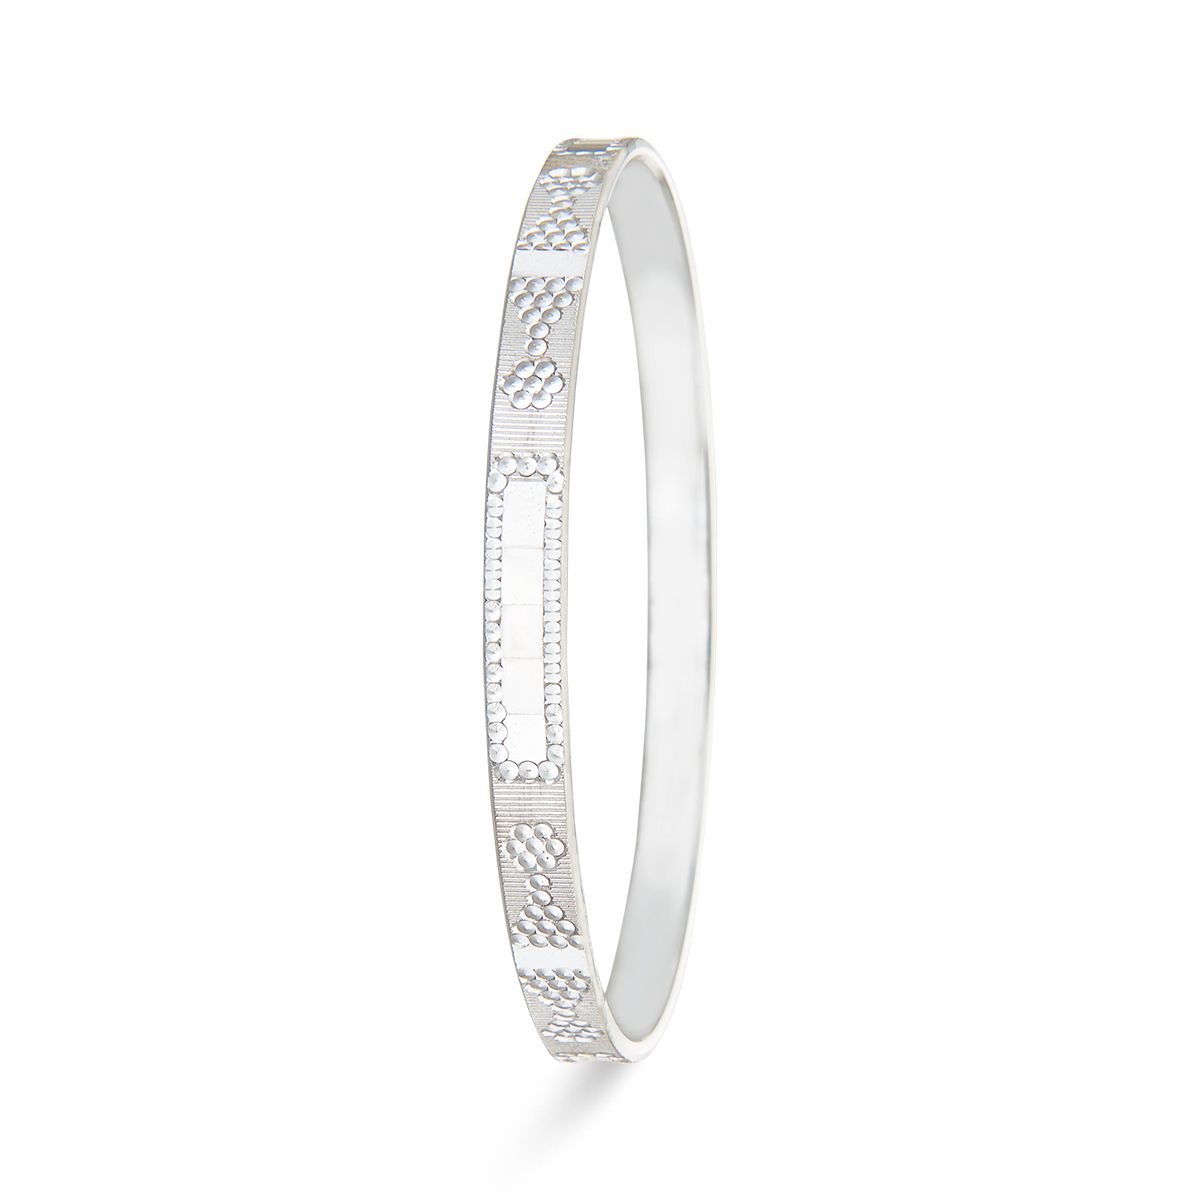 92.5 Pure Silver Fancy Bracelet For Women & Girls - Silver Palace